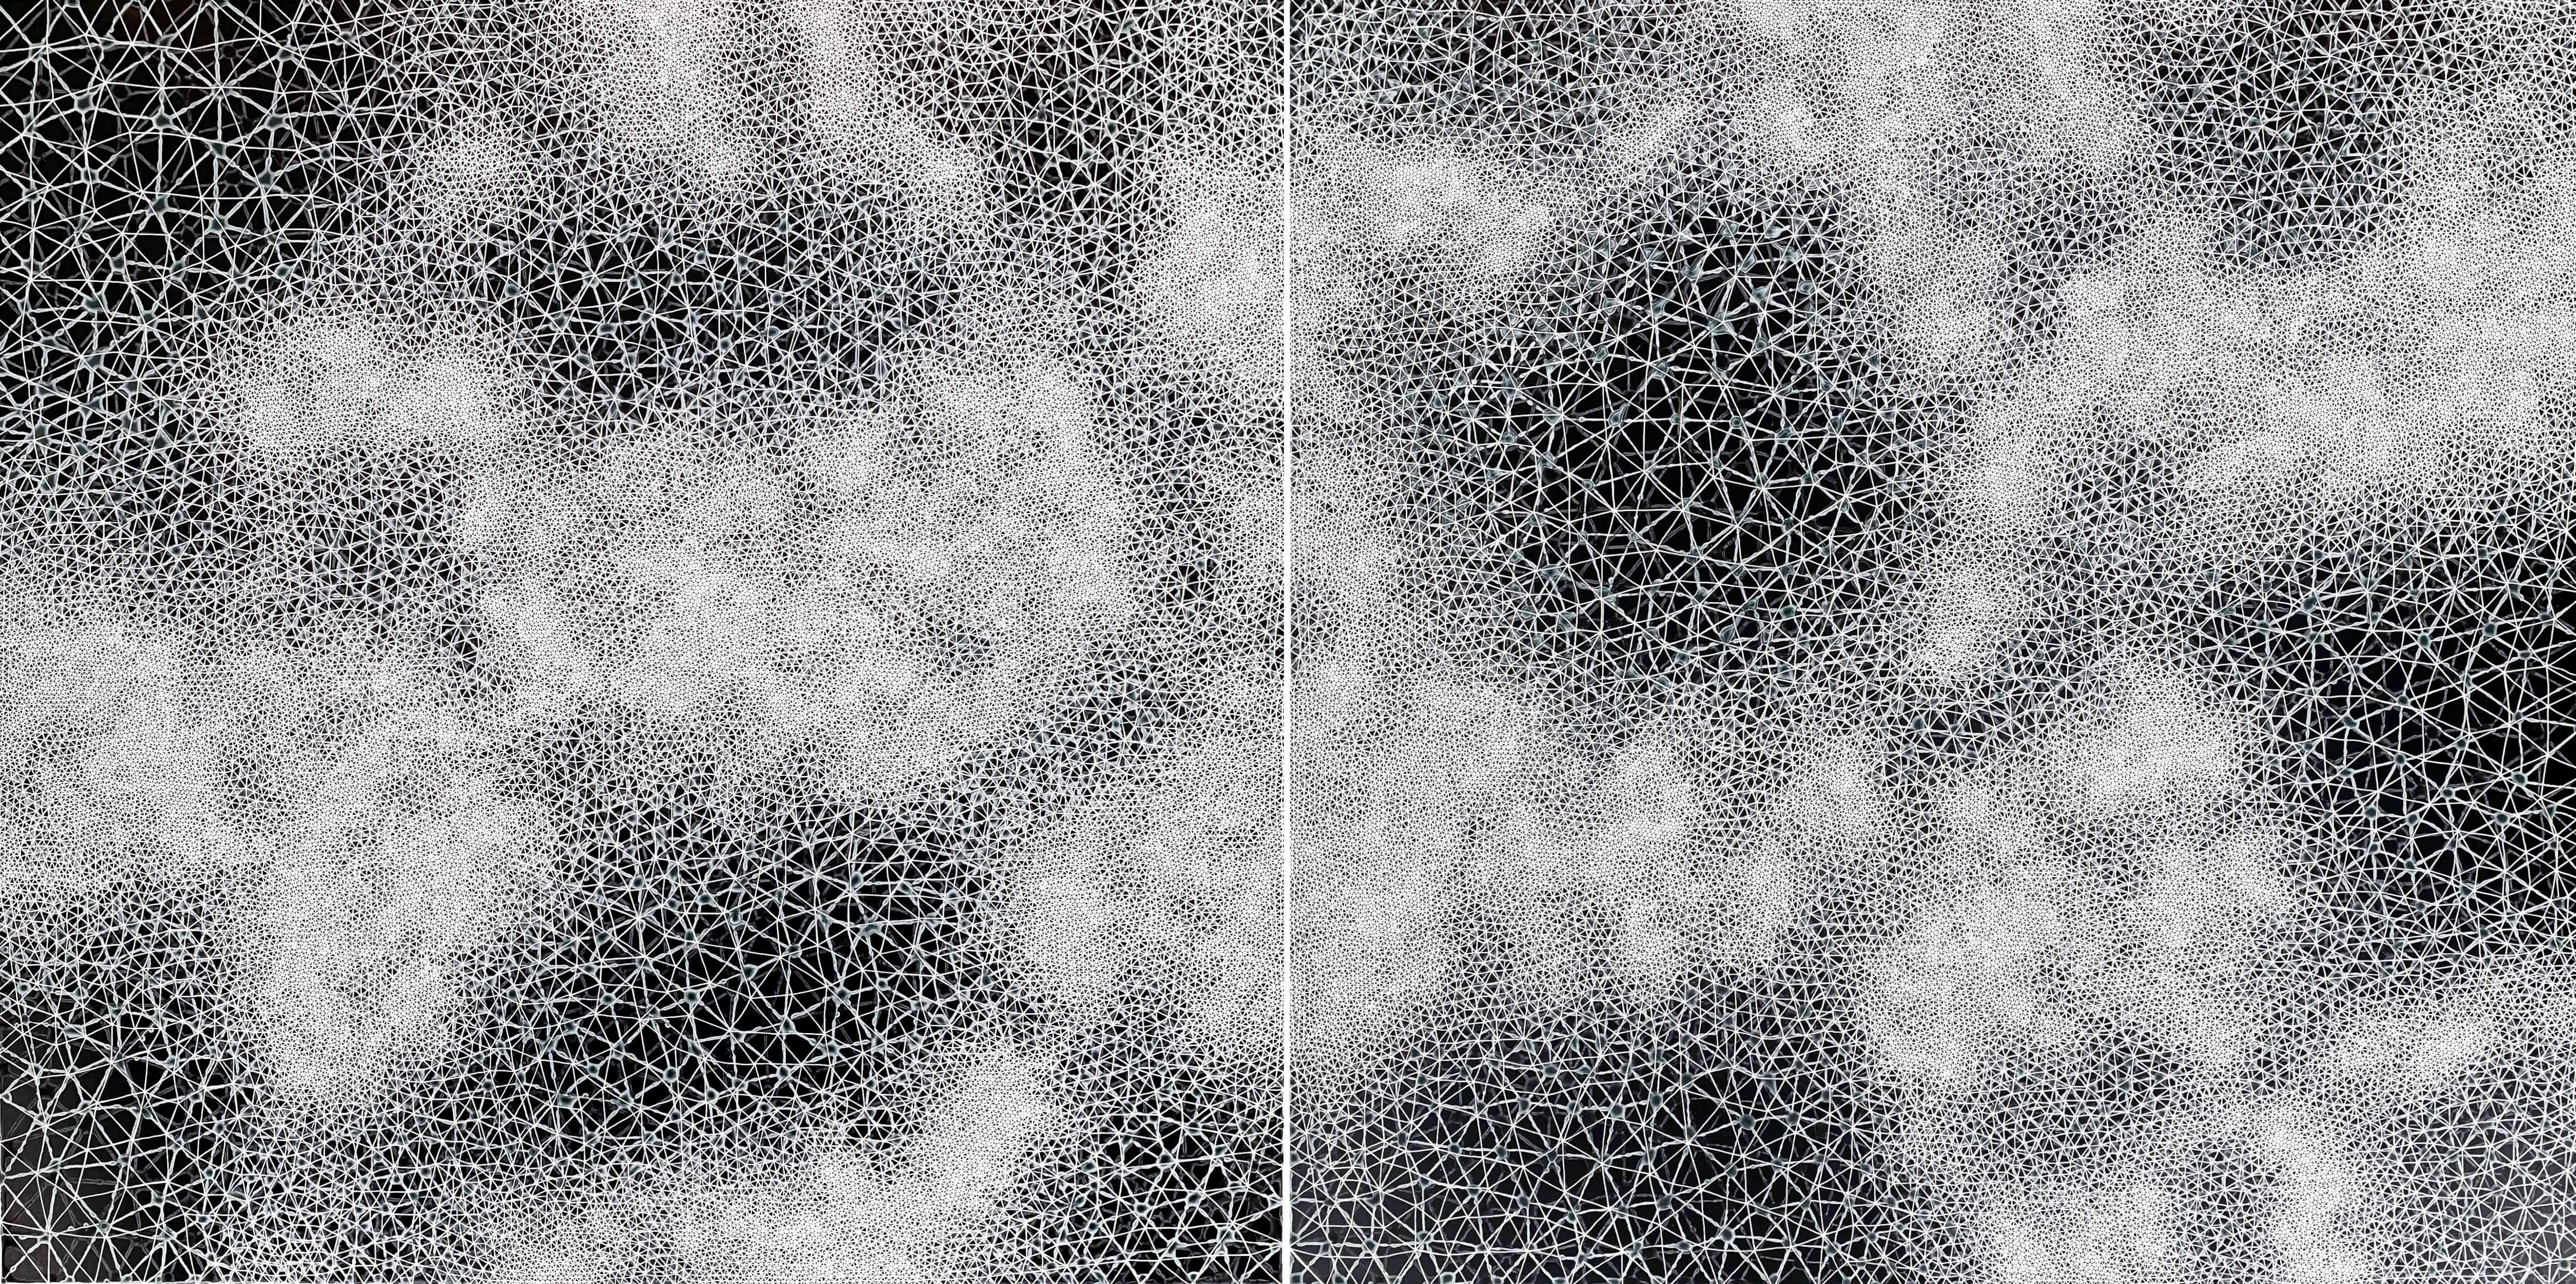 Cohérence - peinture abstraite géométrique diptyque en noir et blanc